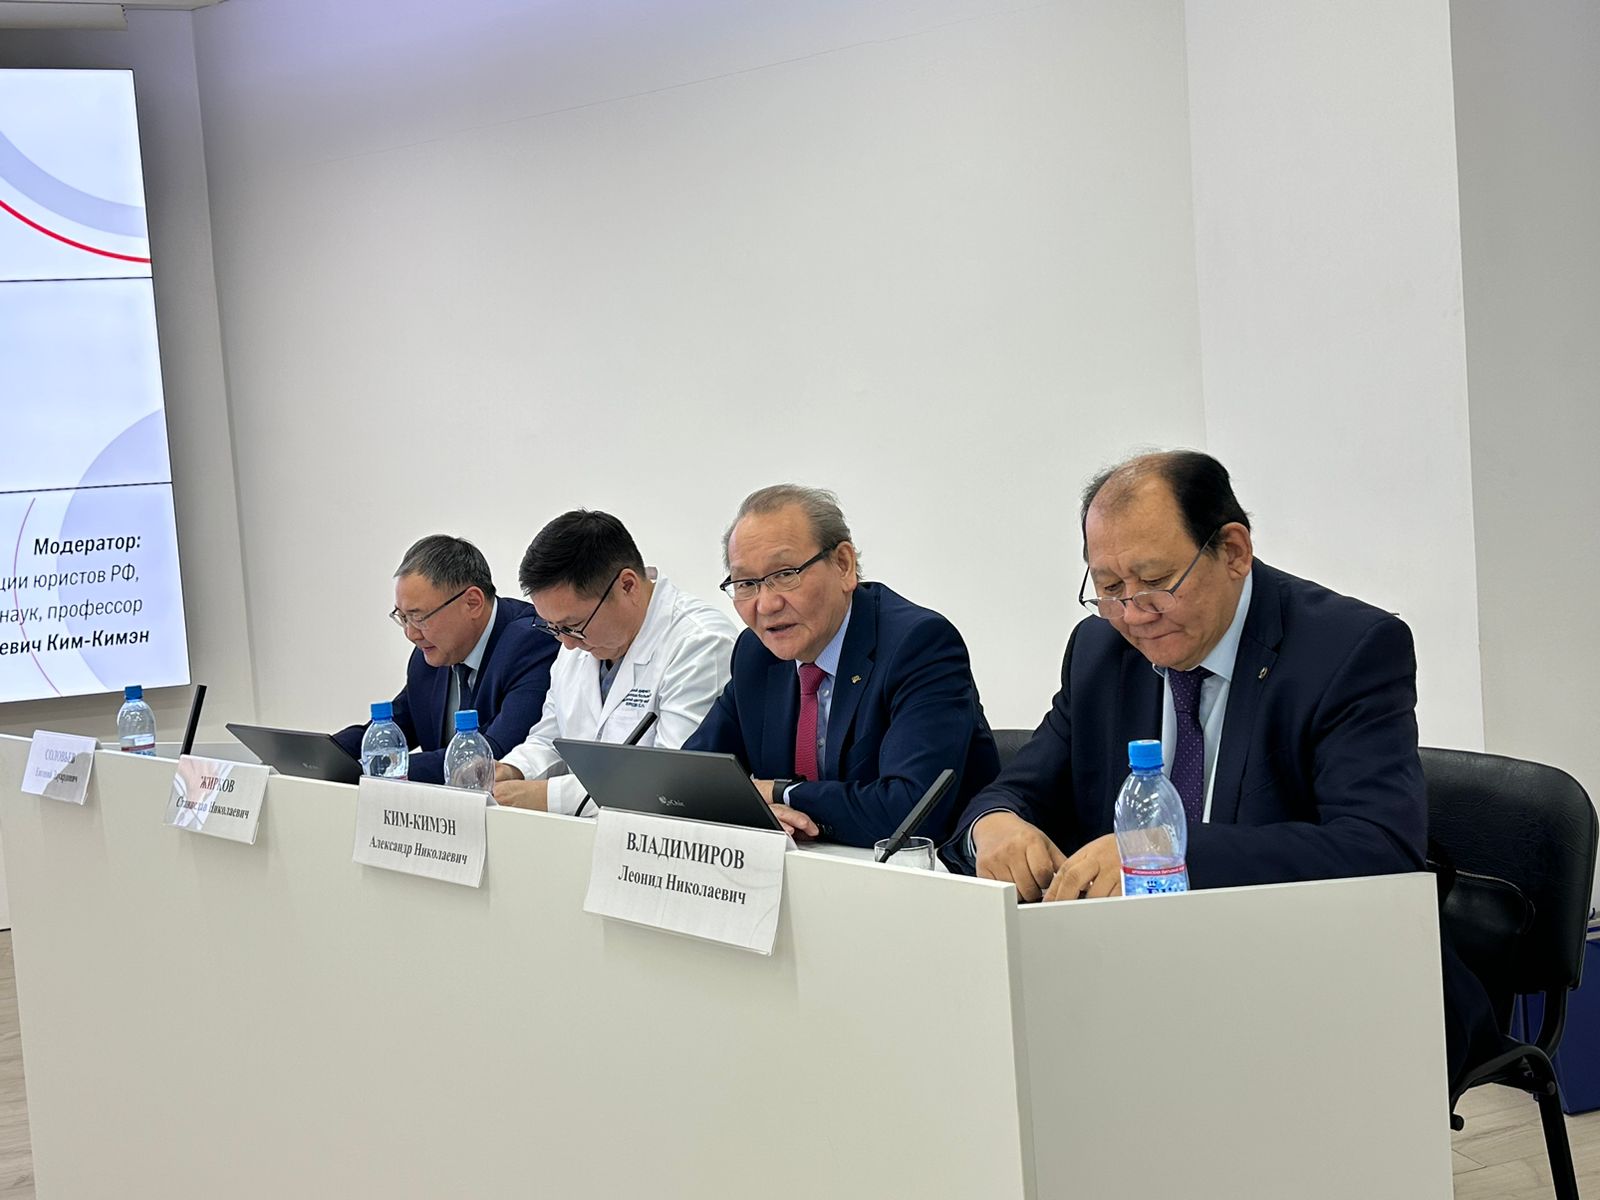 Роль науки в развитии государства и общества обсудили на втором заседании Николаев-клуба «ПЕРВЫЙ»